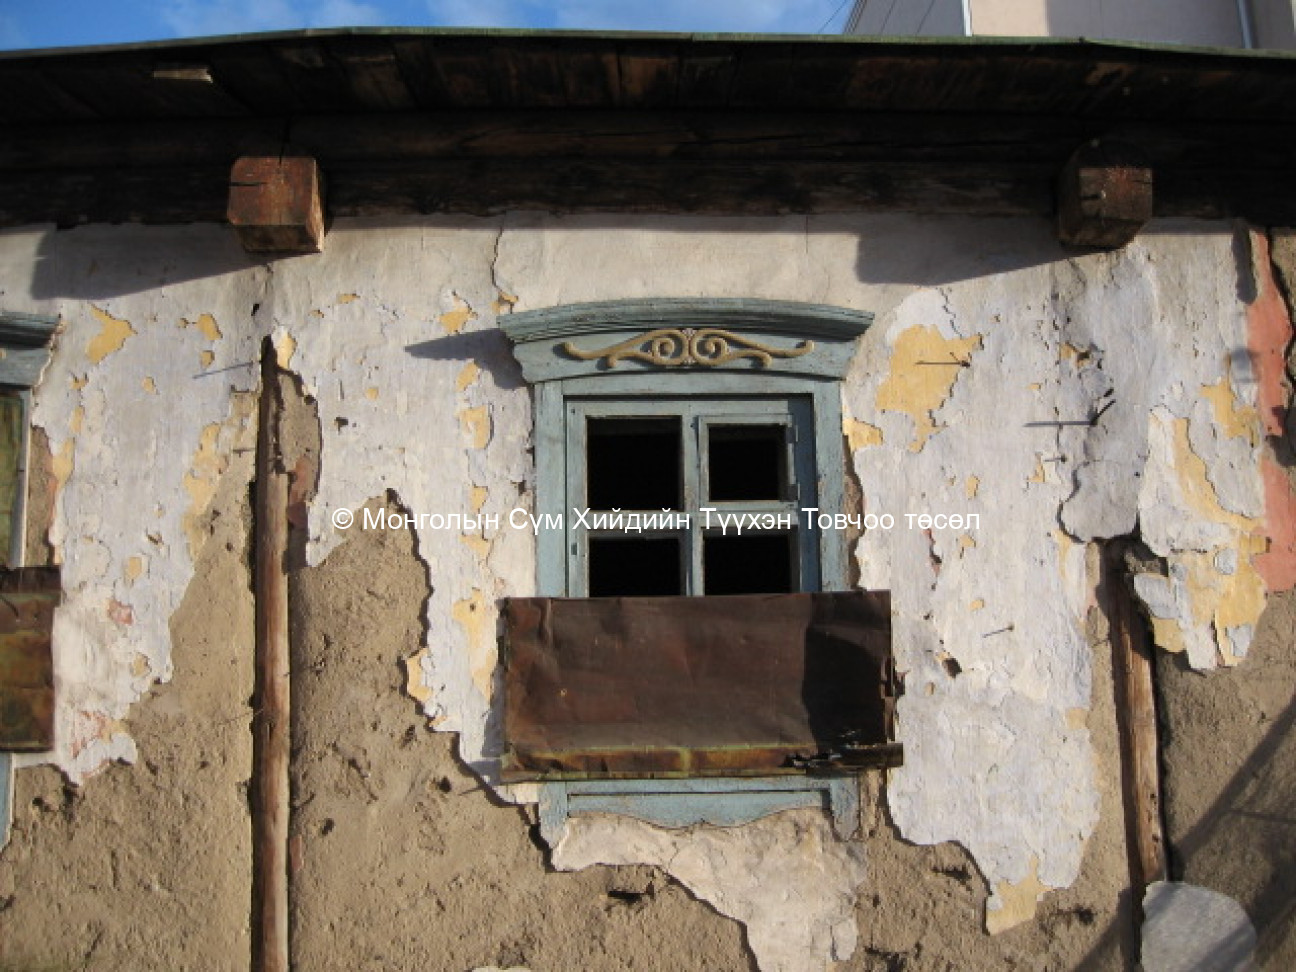 A window 2007